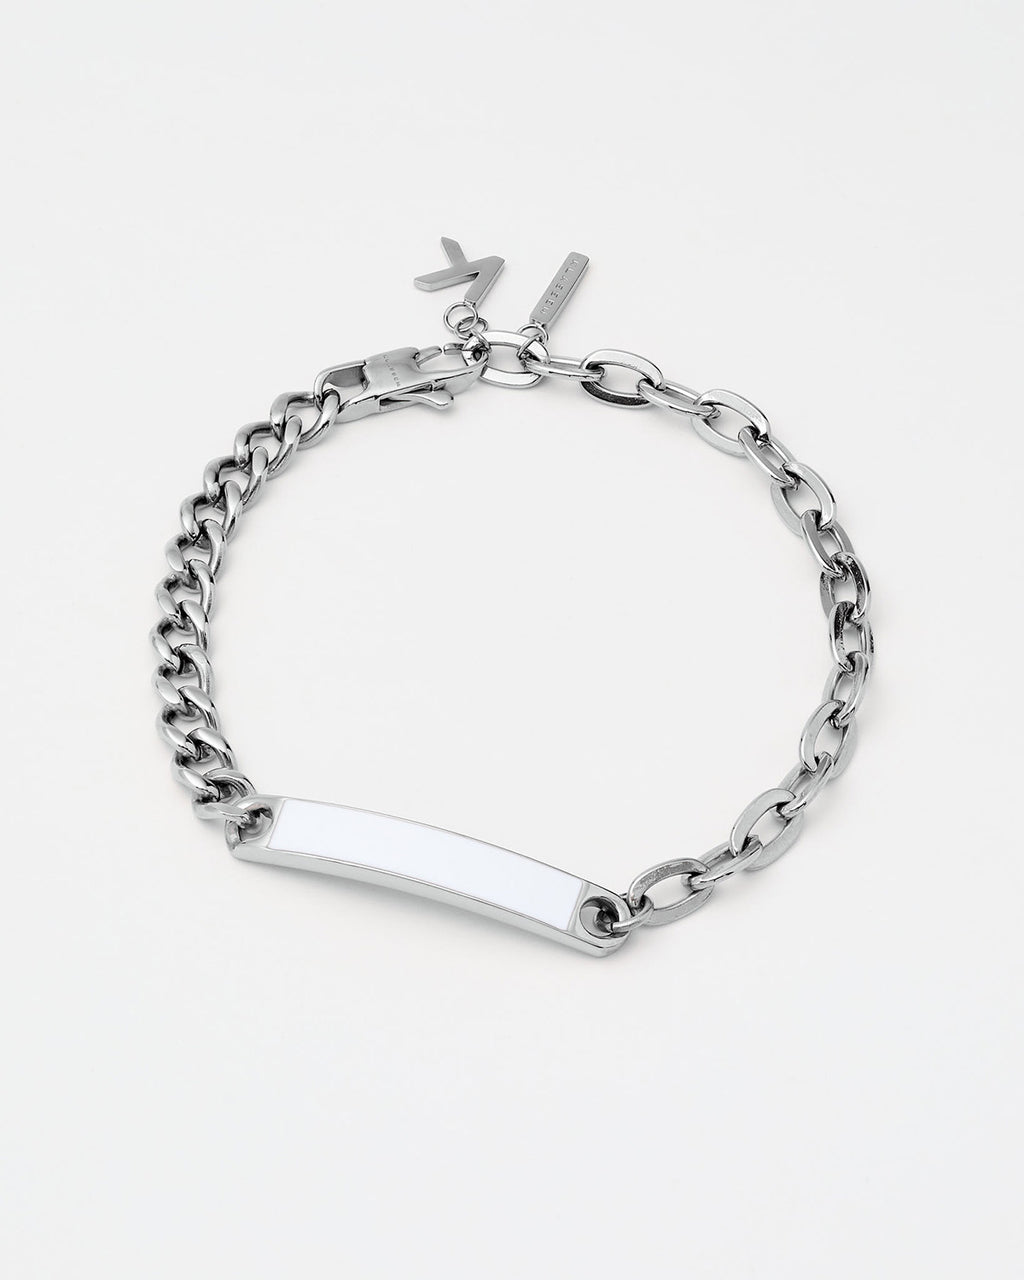 KLASSE 14 Duality Chain2chain Bracelet - Silver & White Enamel